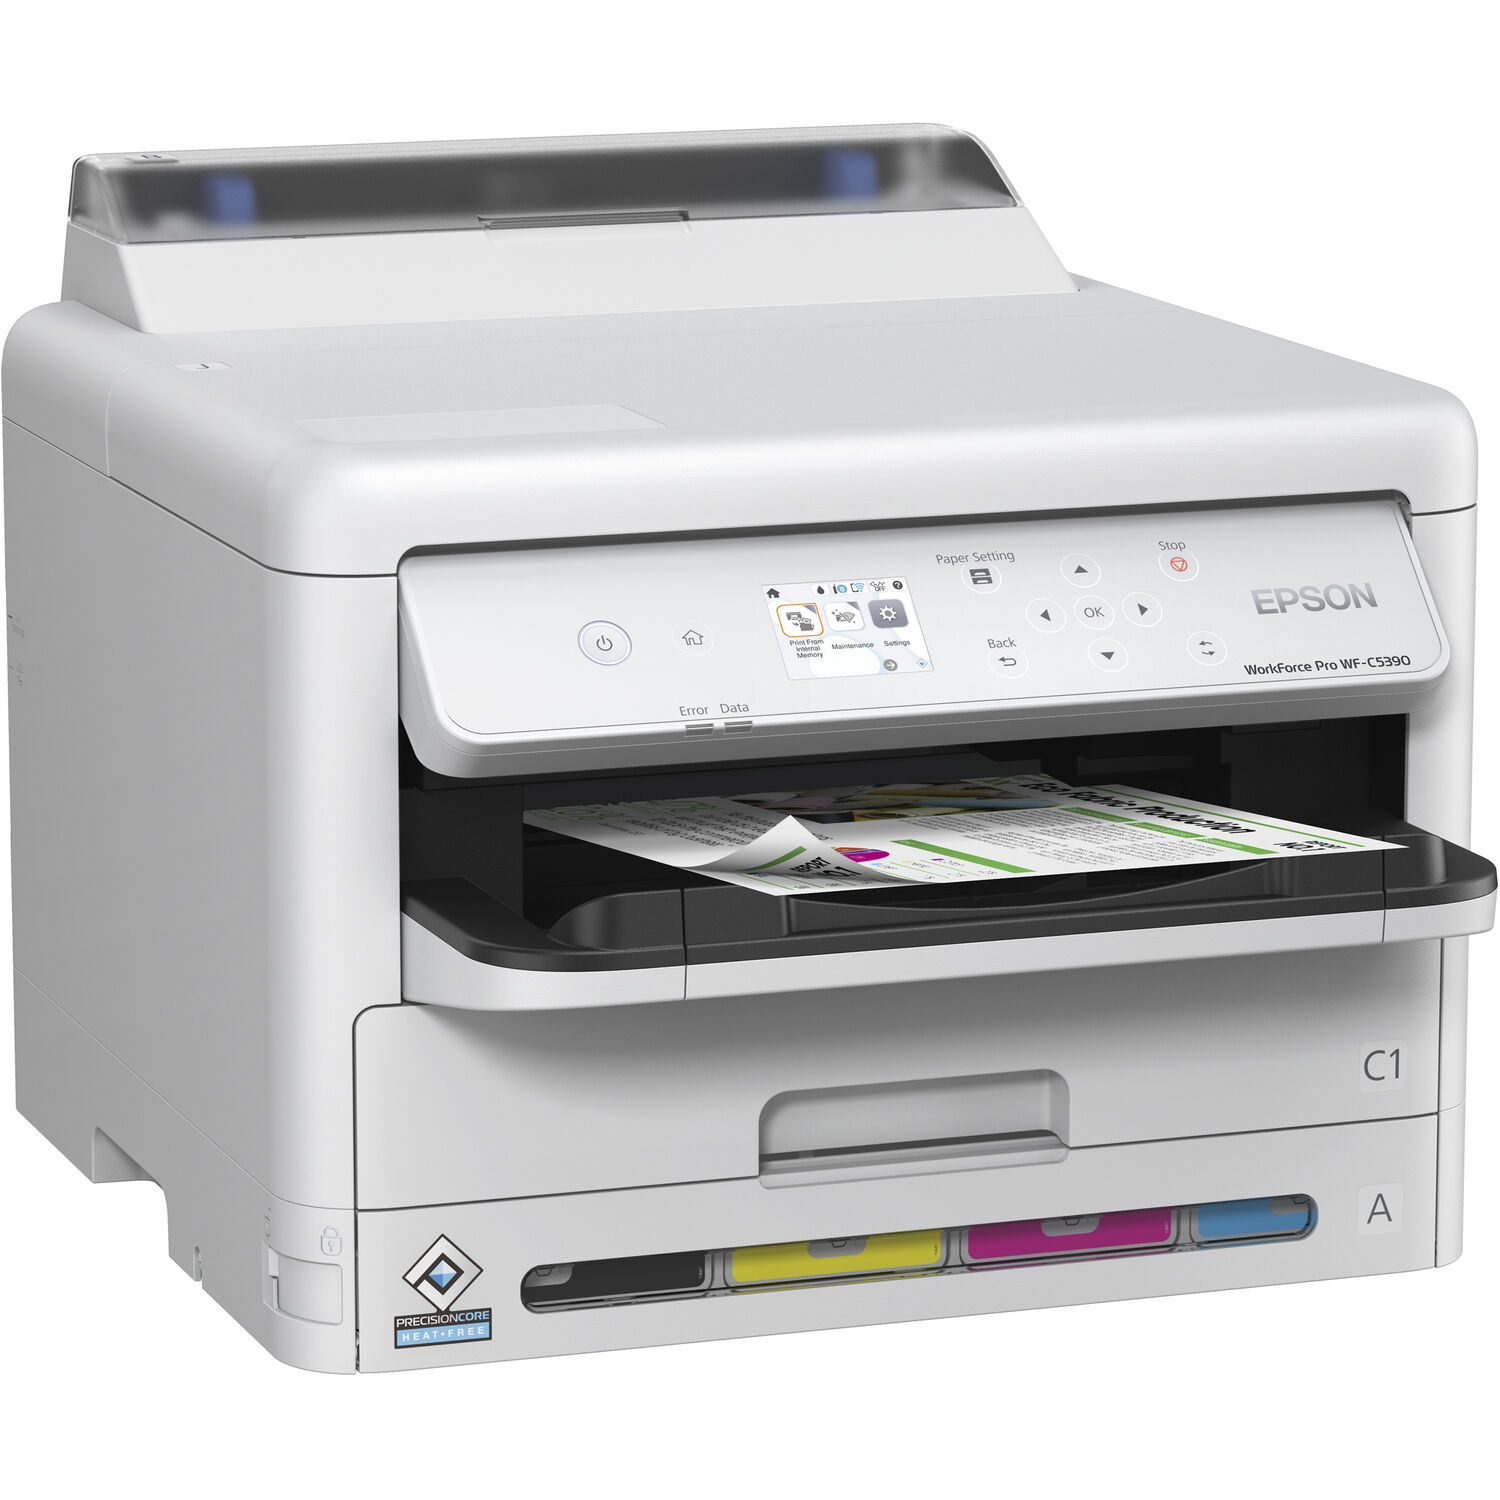 Impresora de Inyección de Tinta a Color Inalámbrica Epson Workforce Pro Wf C5390